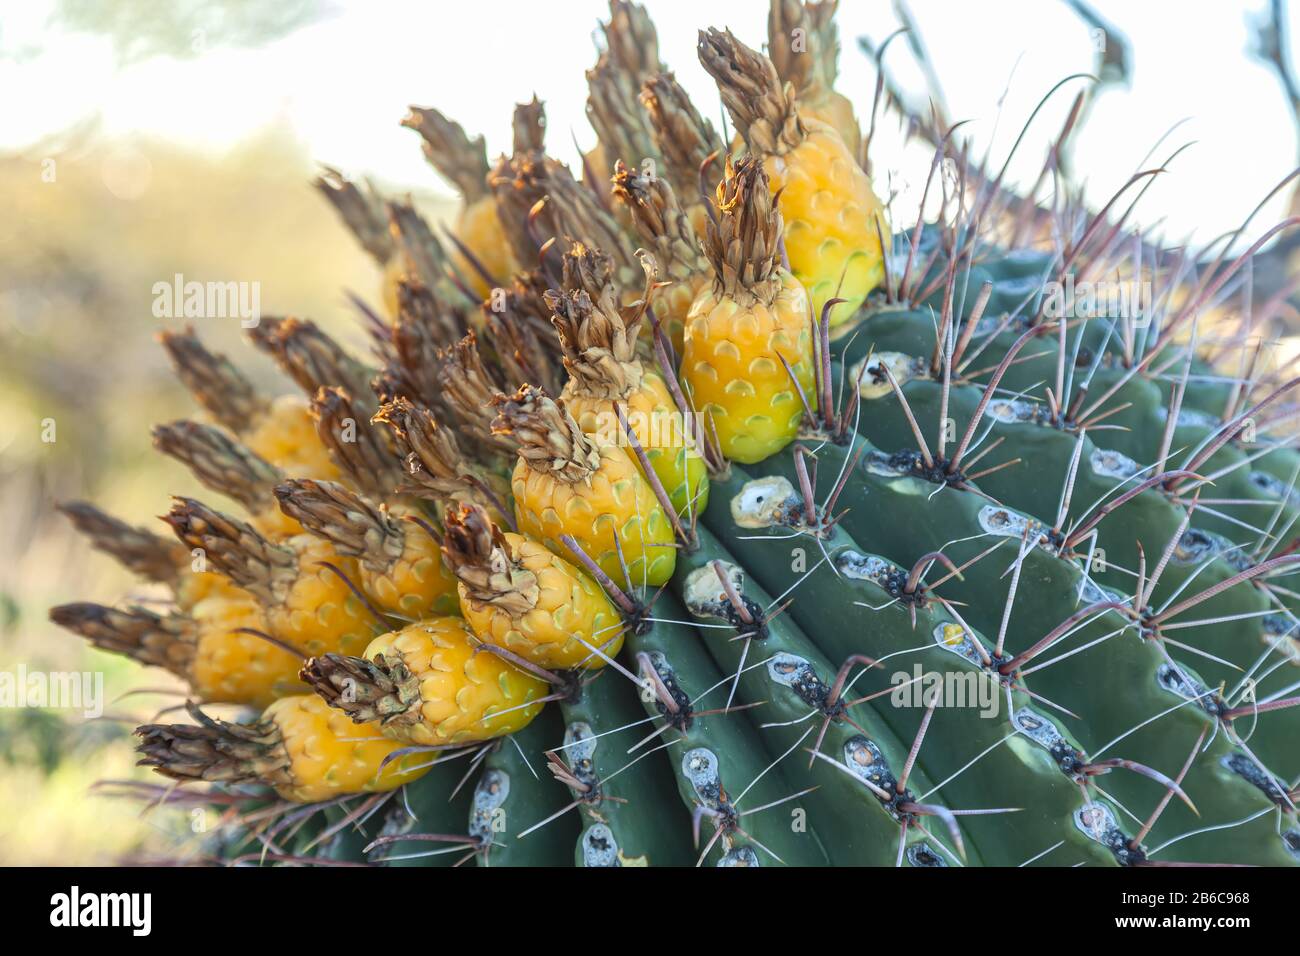 Gefährdete Pflanzenarten Fischhook Barrel Cactus Ferocactus wislizeni, mit Obst, im Winter Saguaro National Park, Arizona, Vereinigte Staaten. Stockfoto